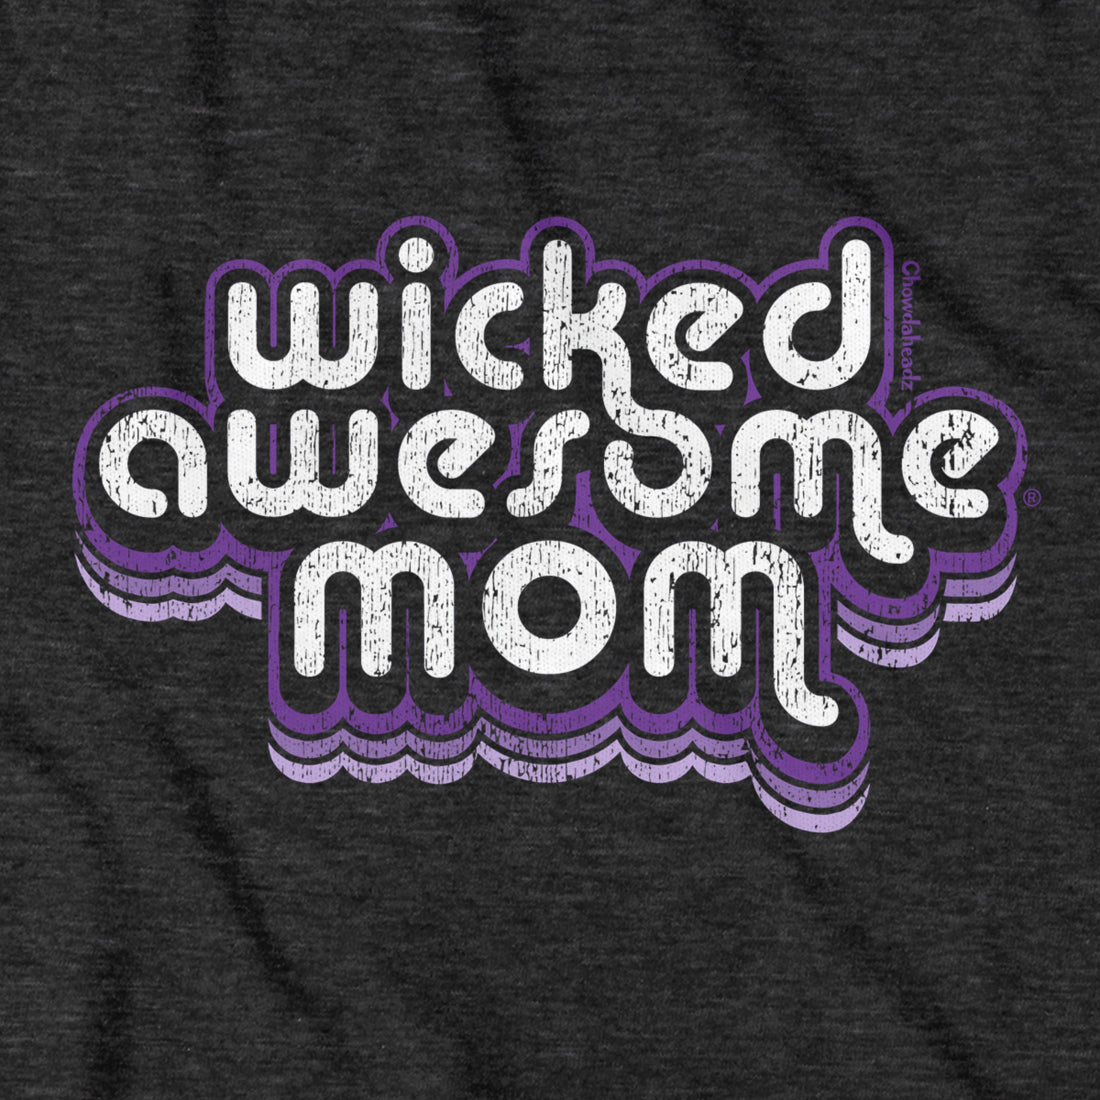 Wicked Awesome Mom Retro T-Shirt - Chowdaheadz